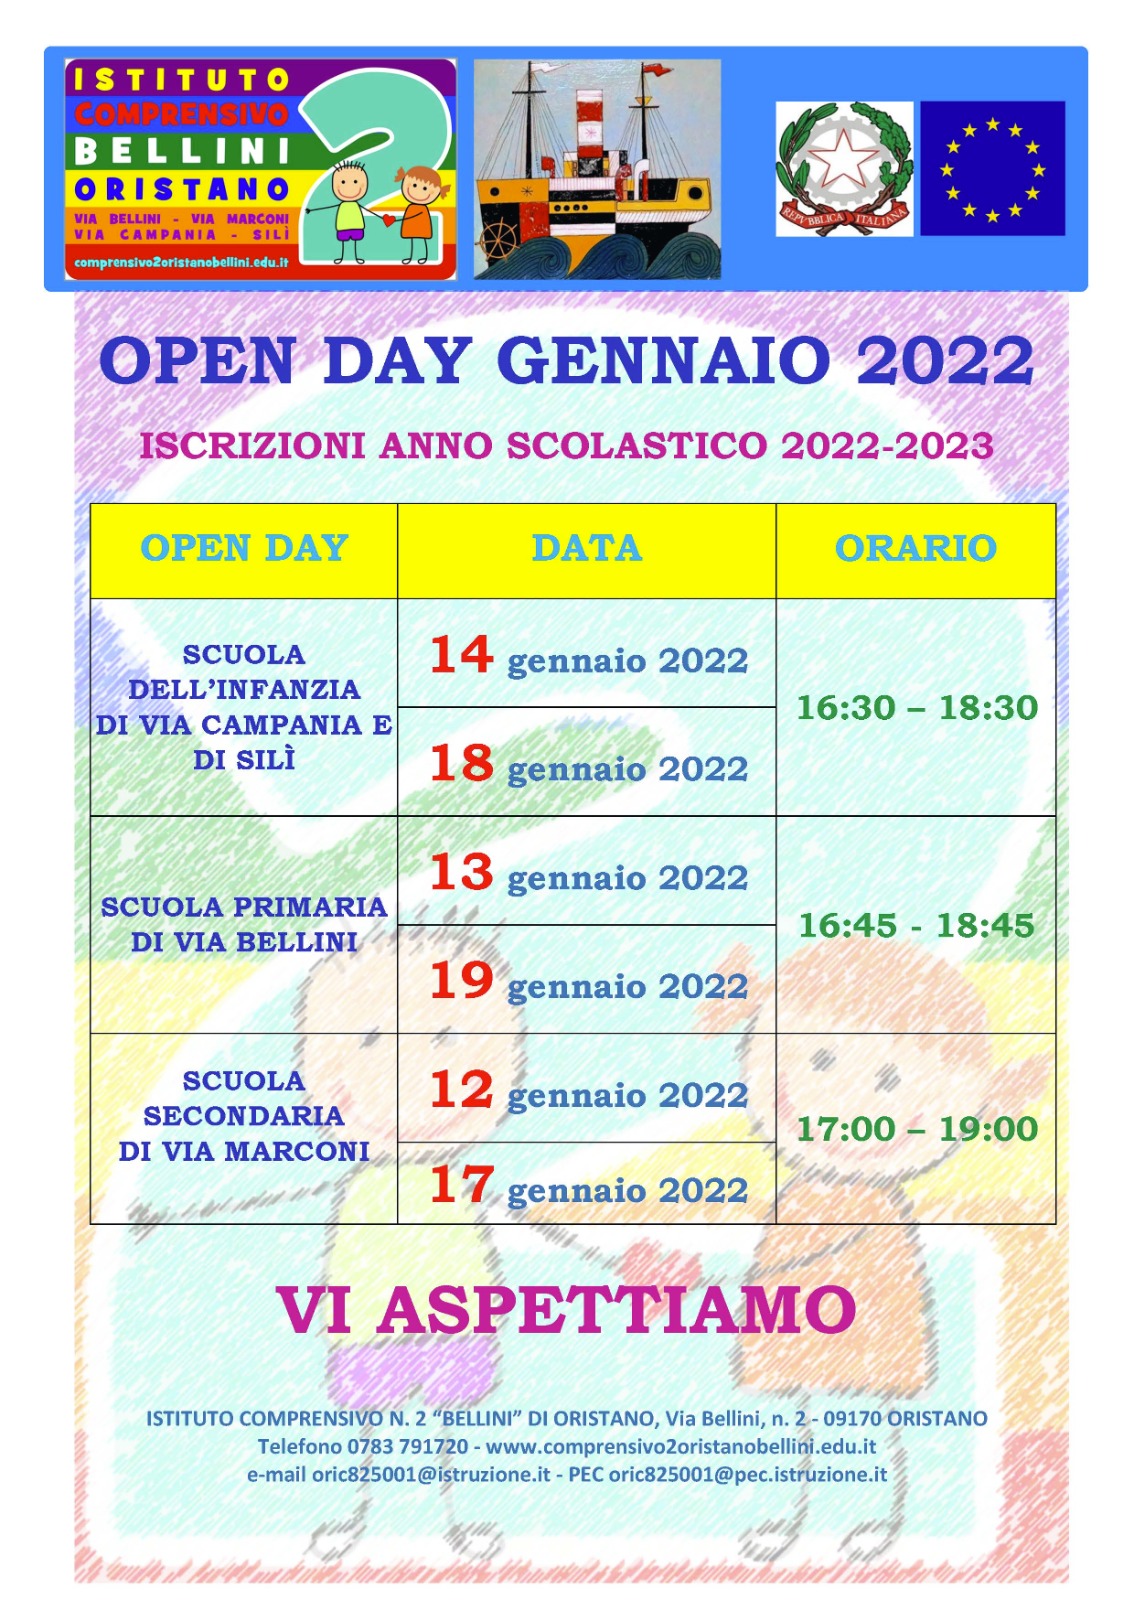 OPEN DAY GENNAIO 2022